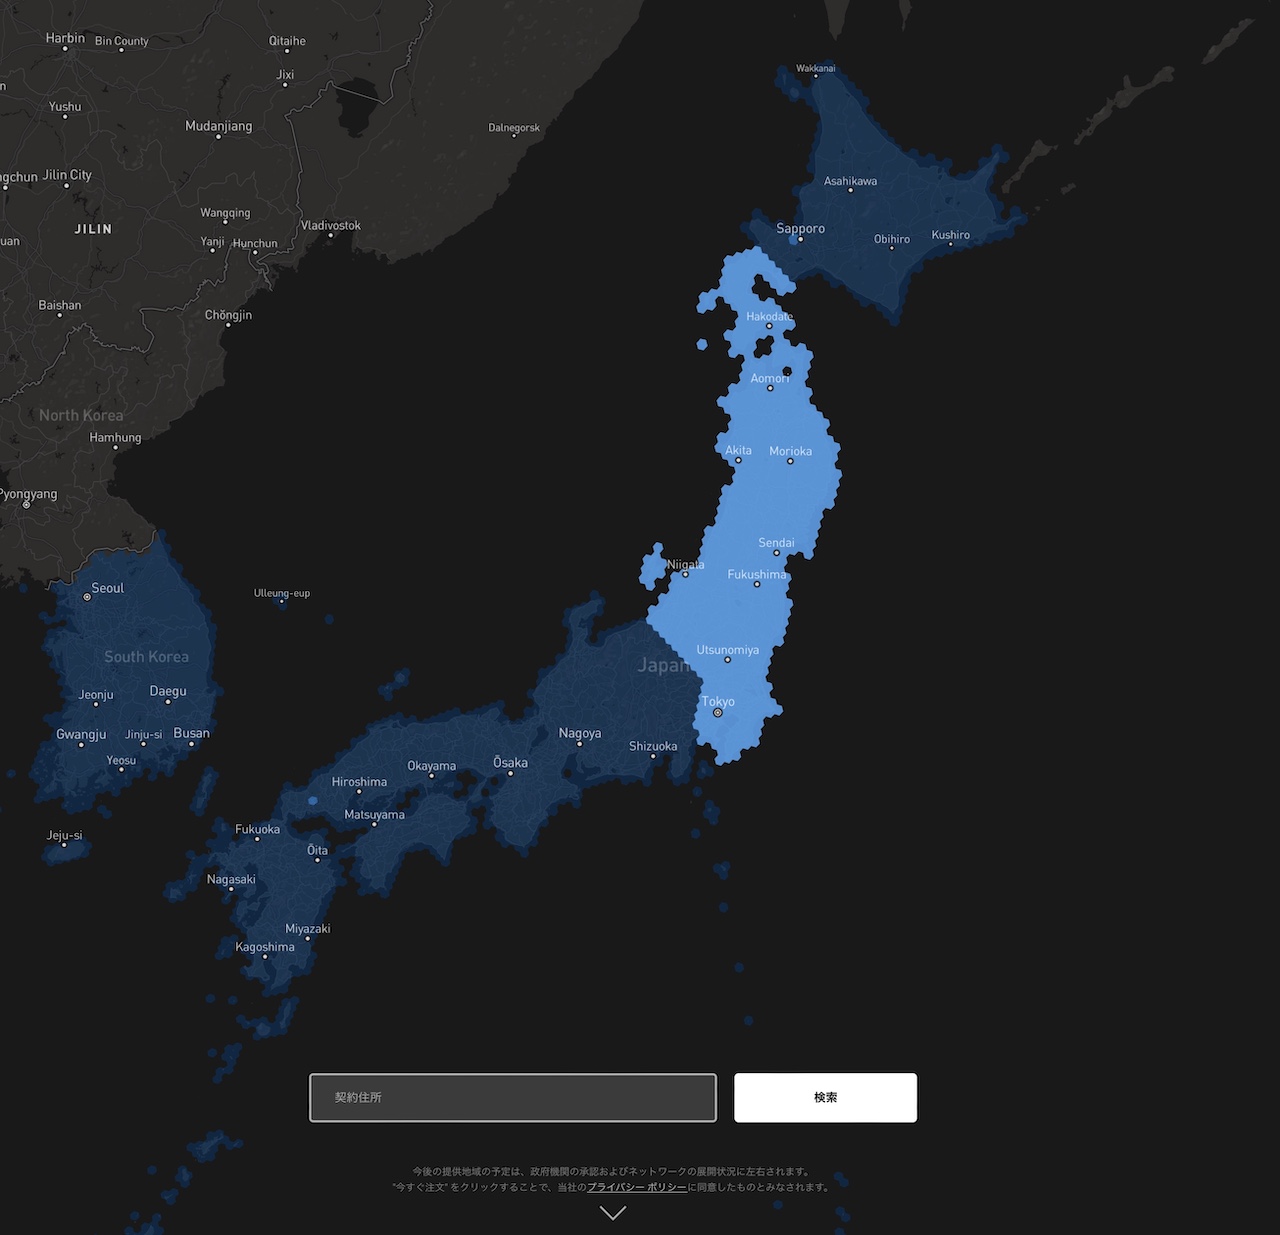 濃い青色が日本で利用可能な地域